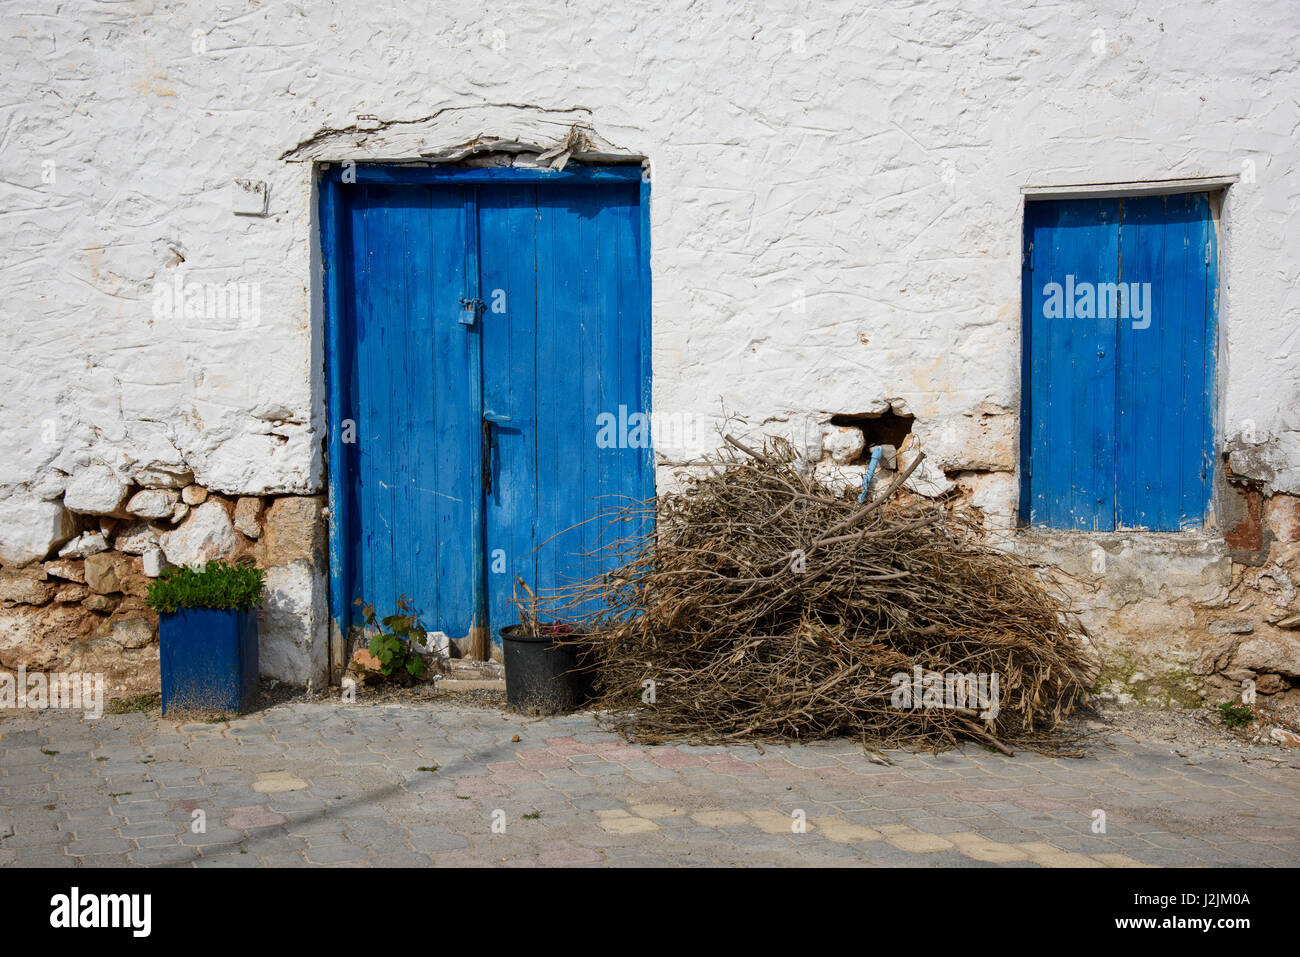 Un manojo de palos fuera de una casa tradicional en el pueblo griego de Analipsi, Creta, Grecia. Foto de stock